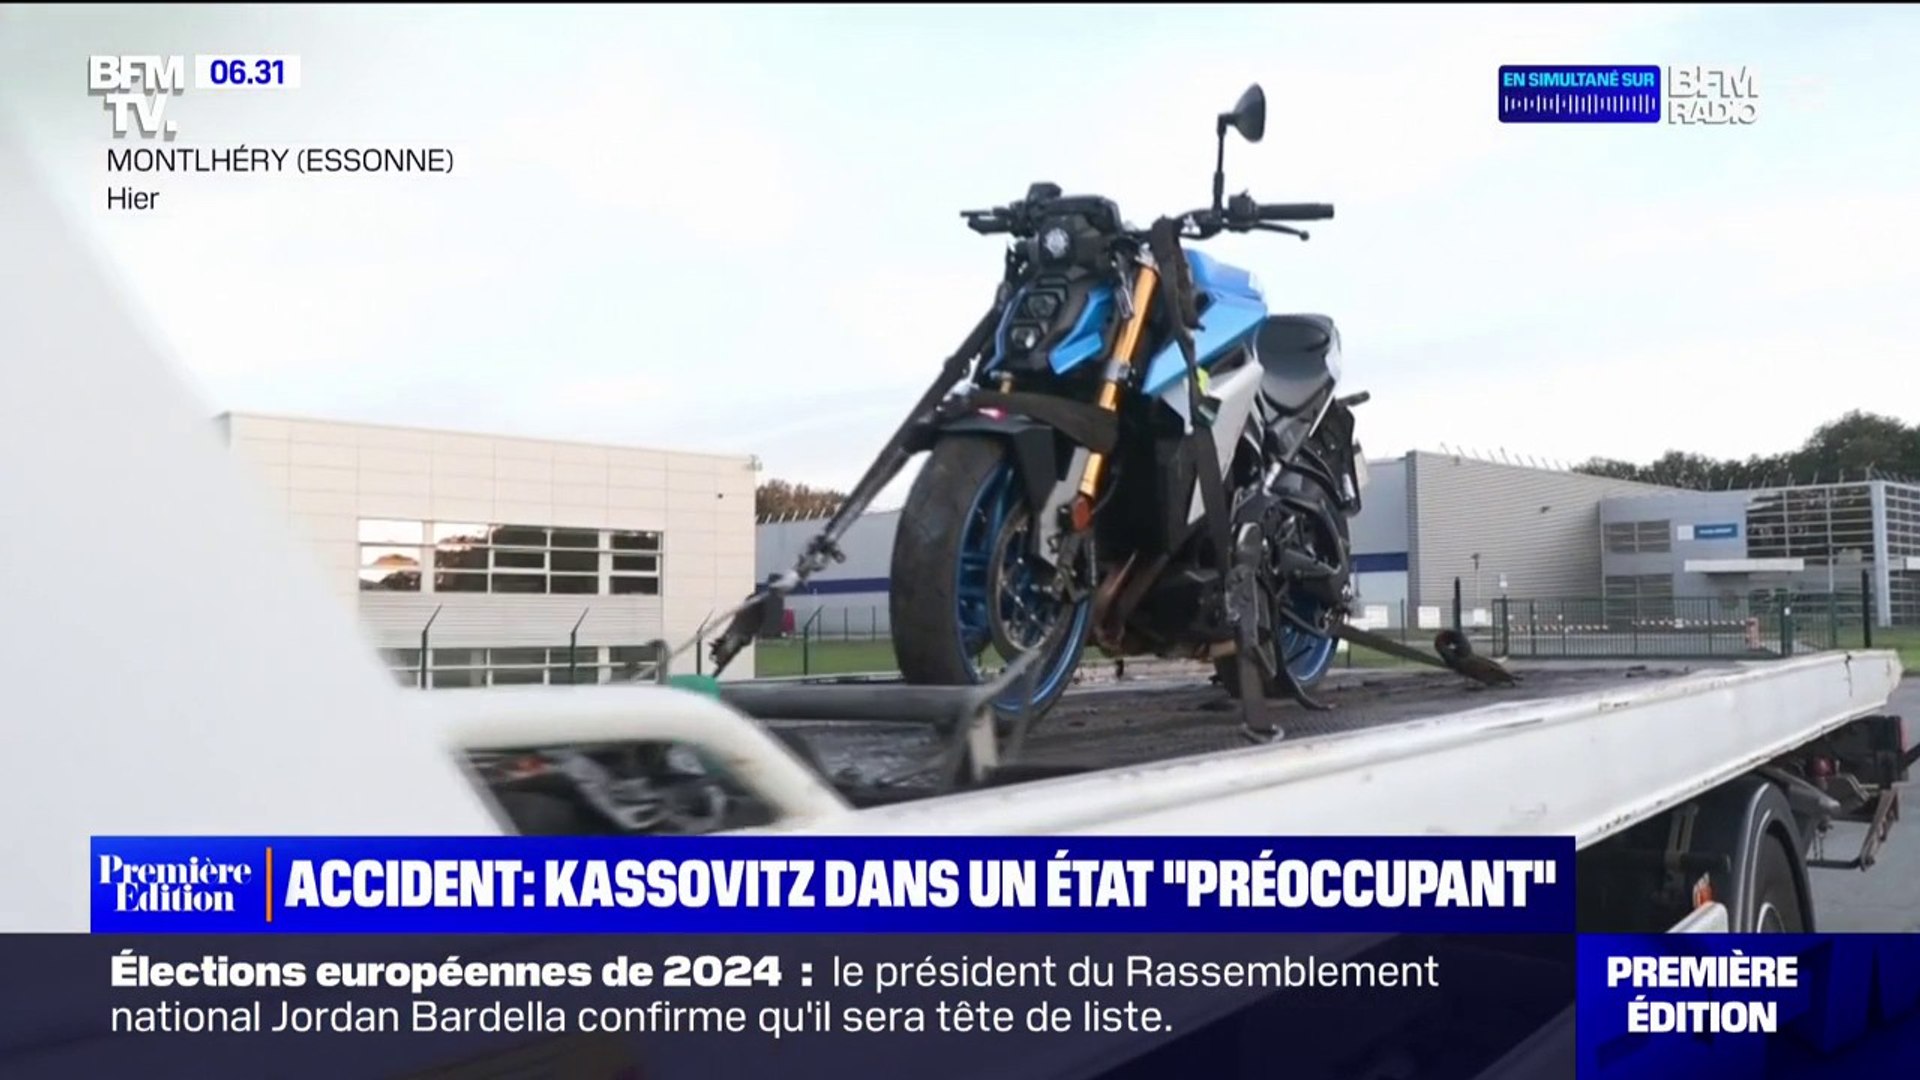 Mathieu Kassovitz dans un état "préoccupant" après un accident de moto sur  un circuit en Essonne - Vidéo Dailymotion